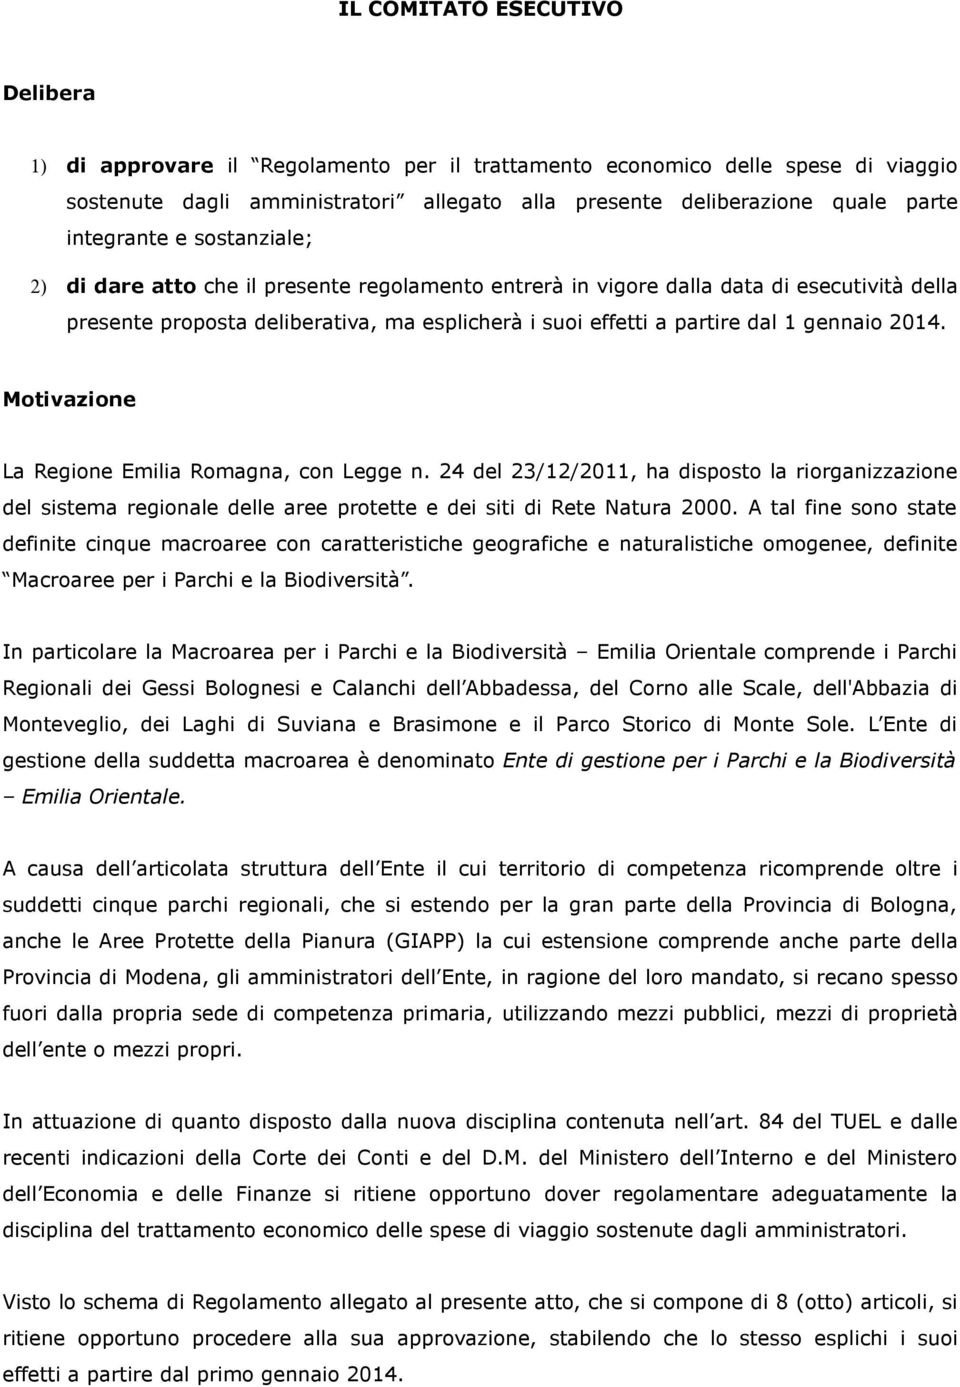 gennaio 2014. Motivazione La Regione Emilia Romagna, con Legge n. 24 del 23/12/2011, ha disposto la riorganizzazione del sistema regionale delle aree protette e dei siti di Rete Natura 2000.